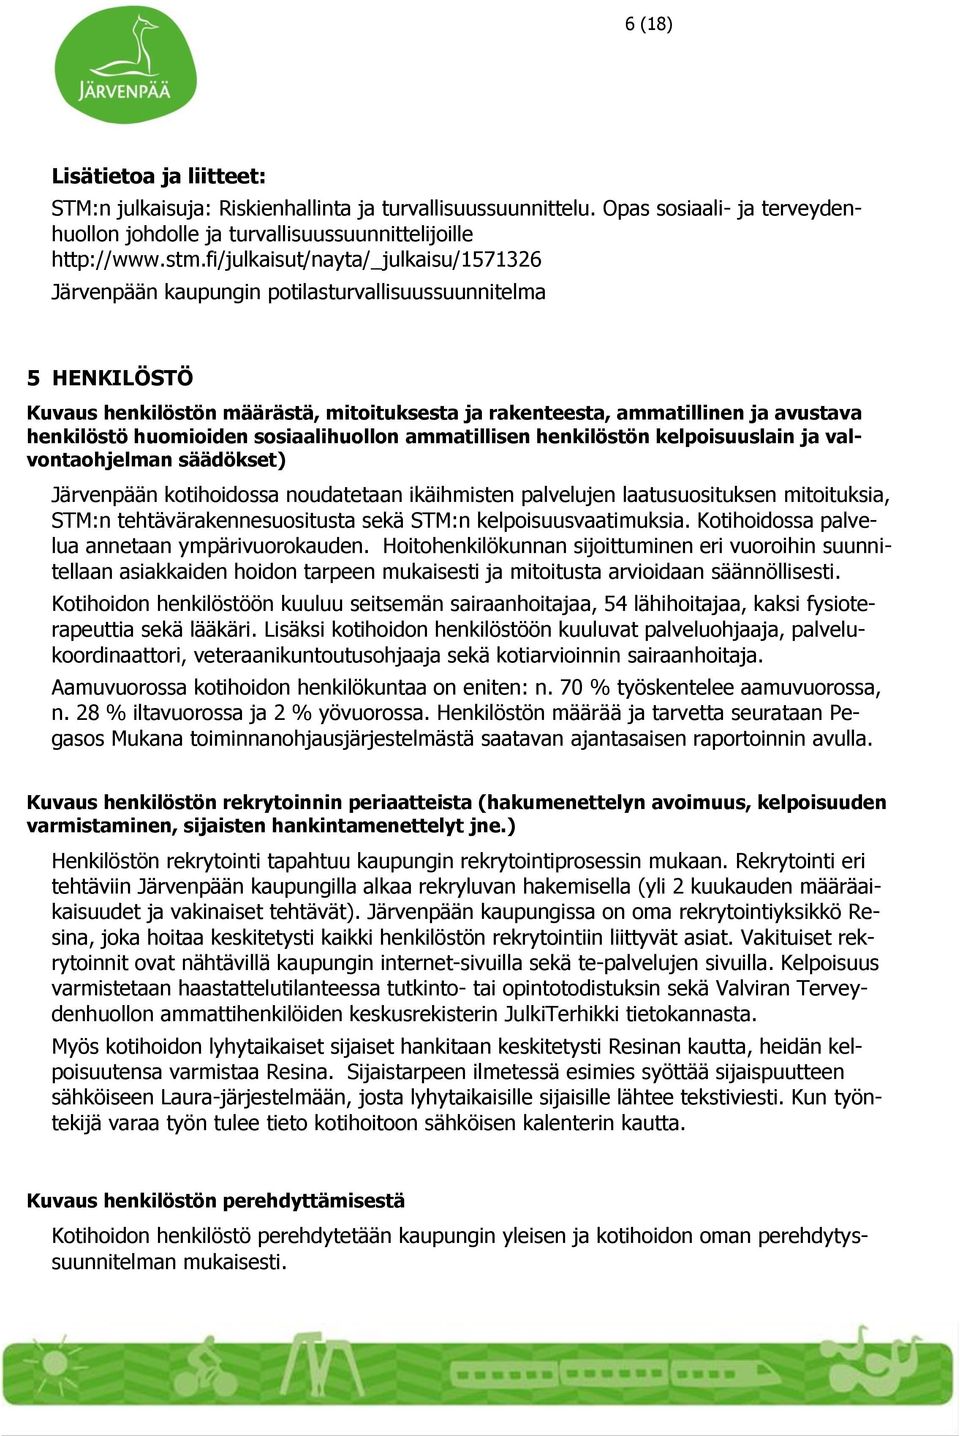 huomioiden sosiaalihuollon ammatillisen henkilöstön kelpoisuuslain ja valvontaohjelman säädökset) Järvenpään kotihoidossa noudatetaan ikäihmisten palvelujen laatusuosituksen mitoituksia, STM:n